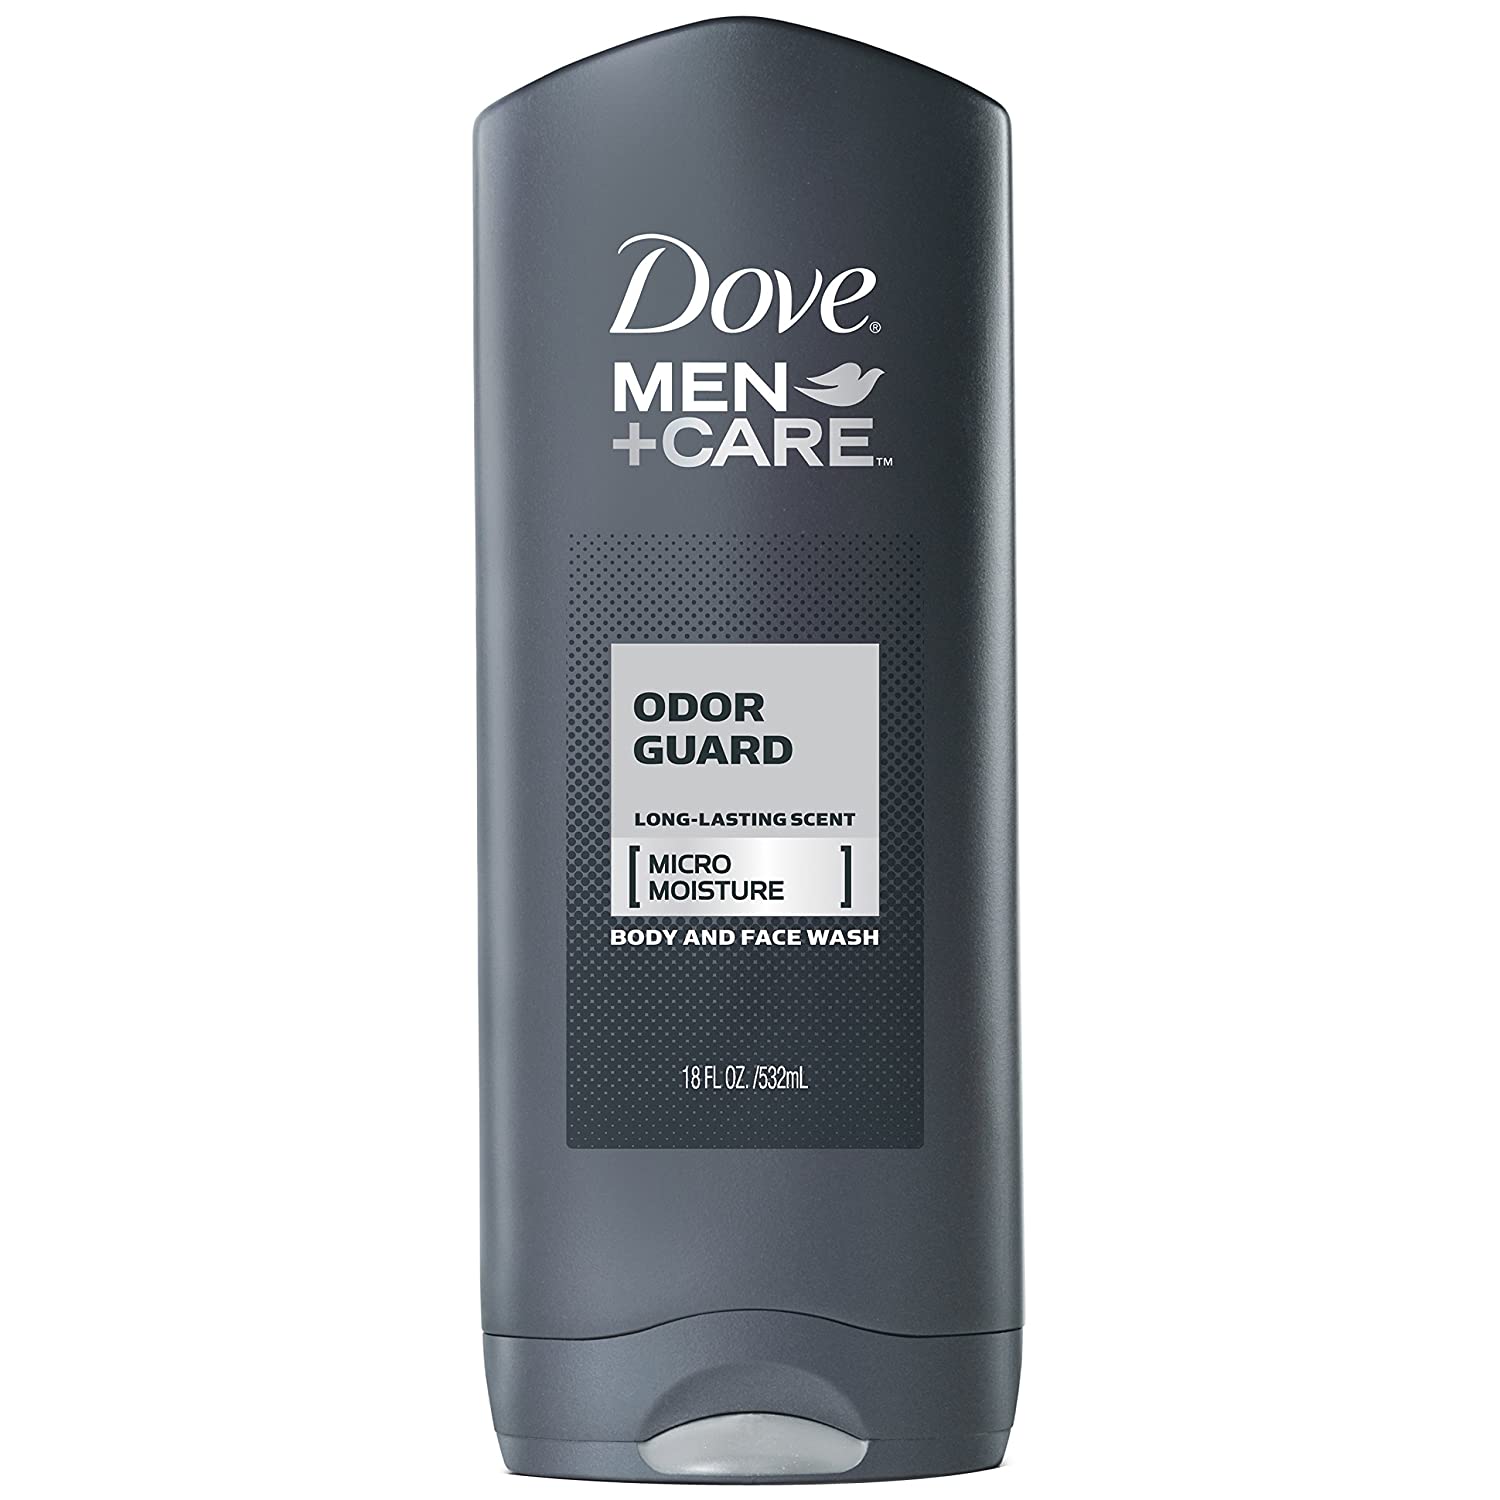 Dove Men+Care Body Wash, Odor Guard 18 oz (532ml)